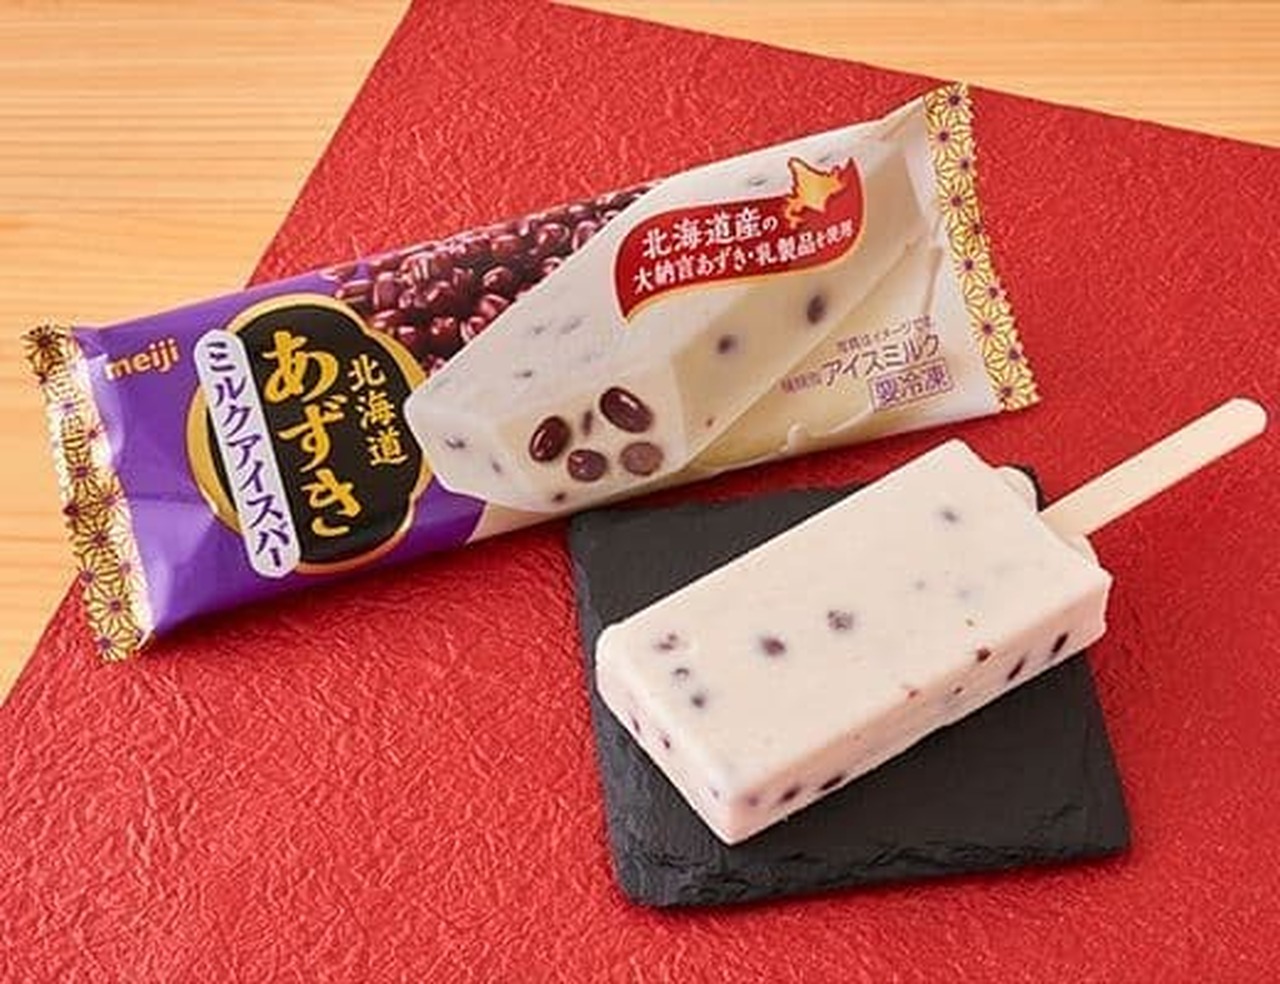 Meiji Hokkaido Azuki Milk Ice Bar